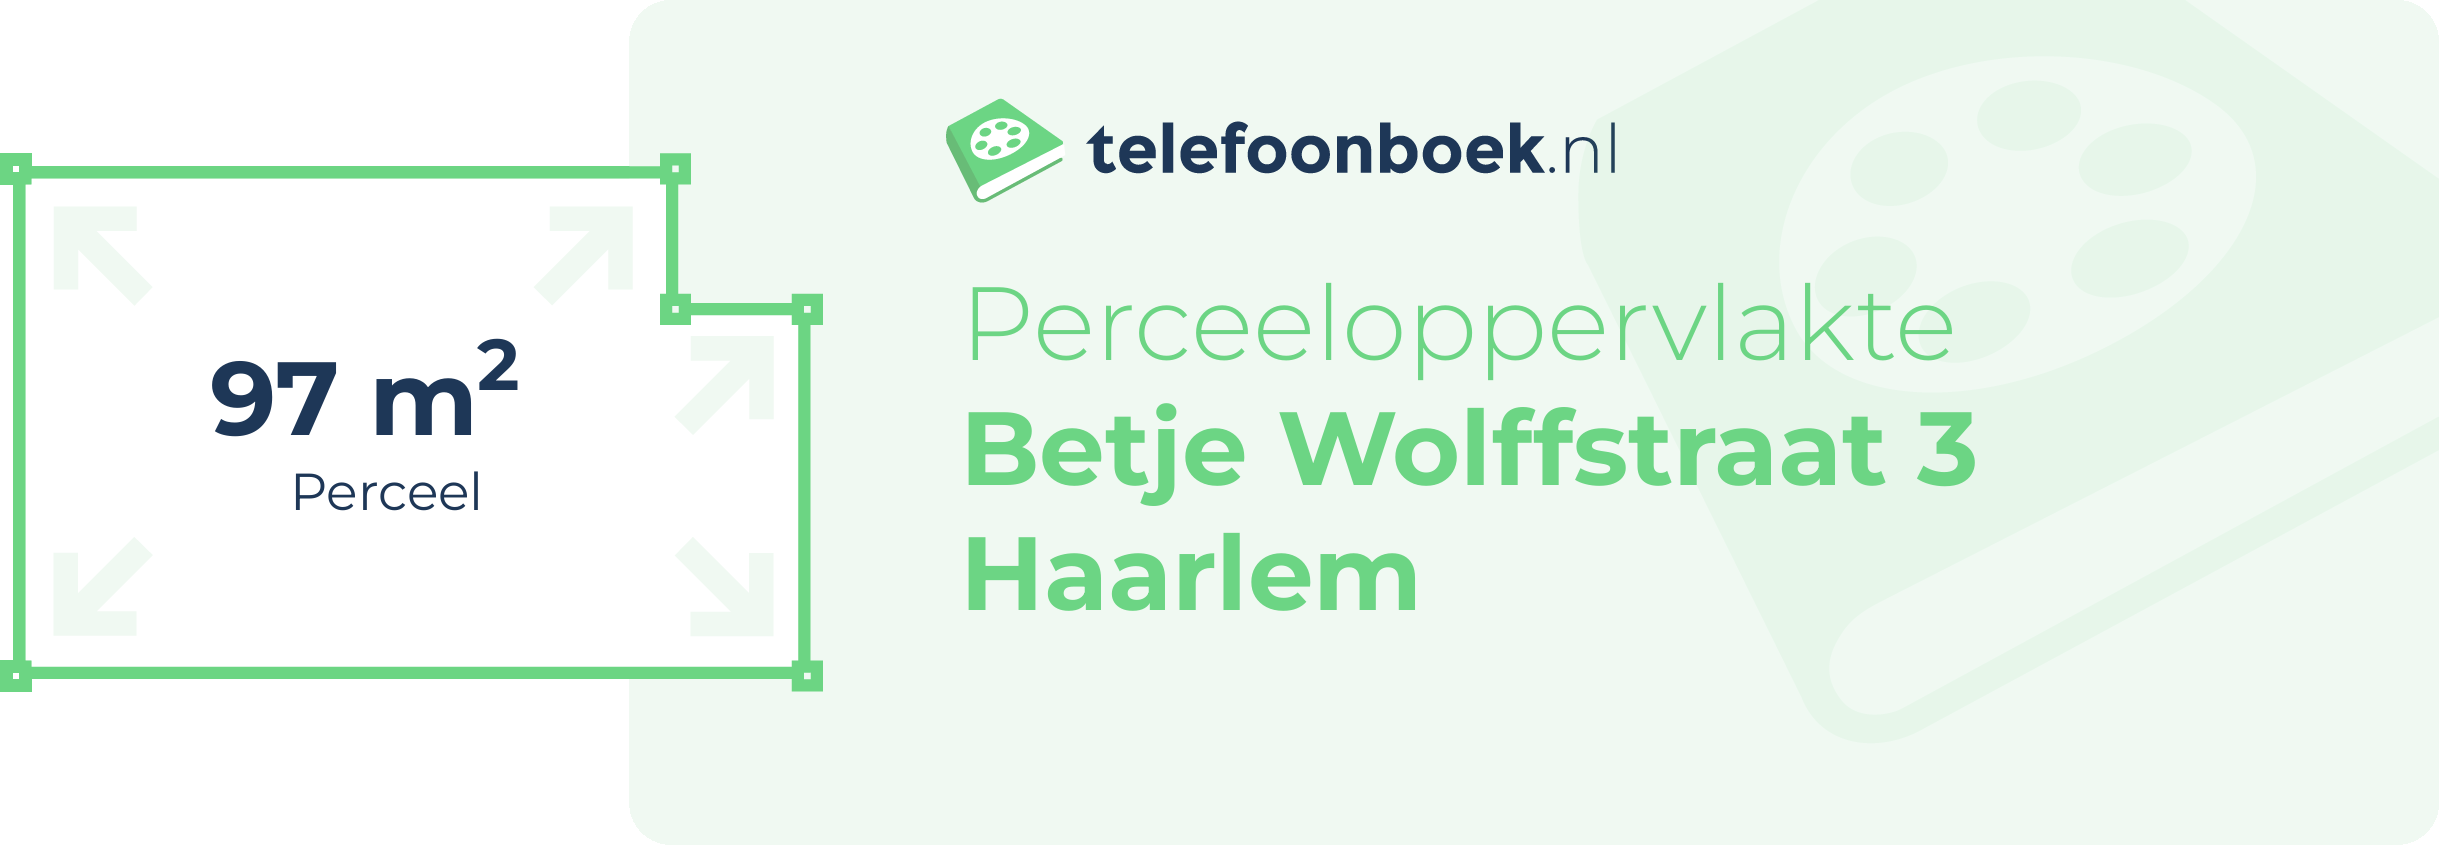 Perceeloppervlakte Betje Wolffstraat 3 Haarlem